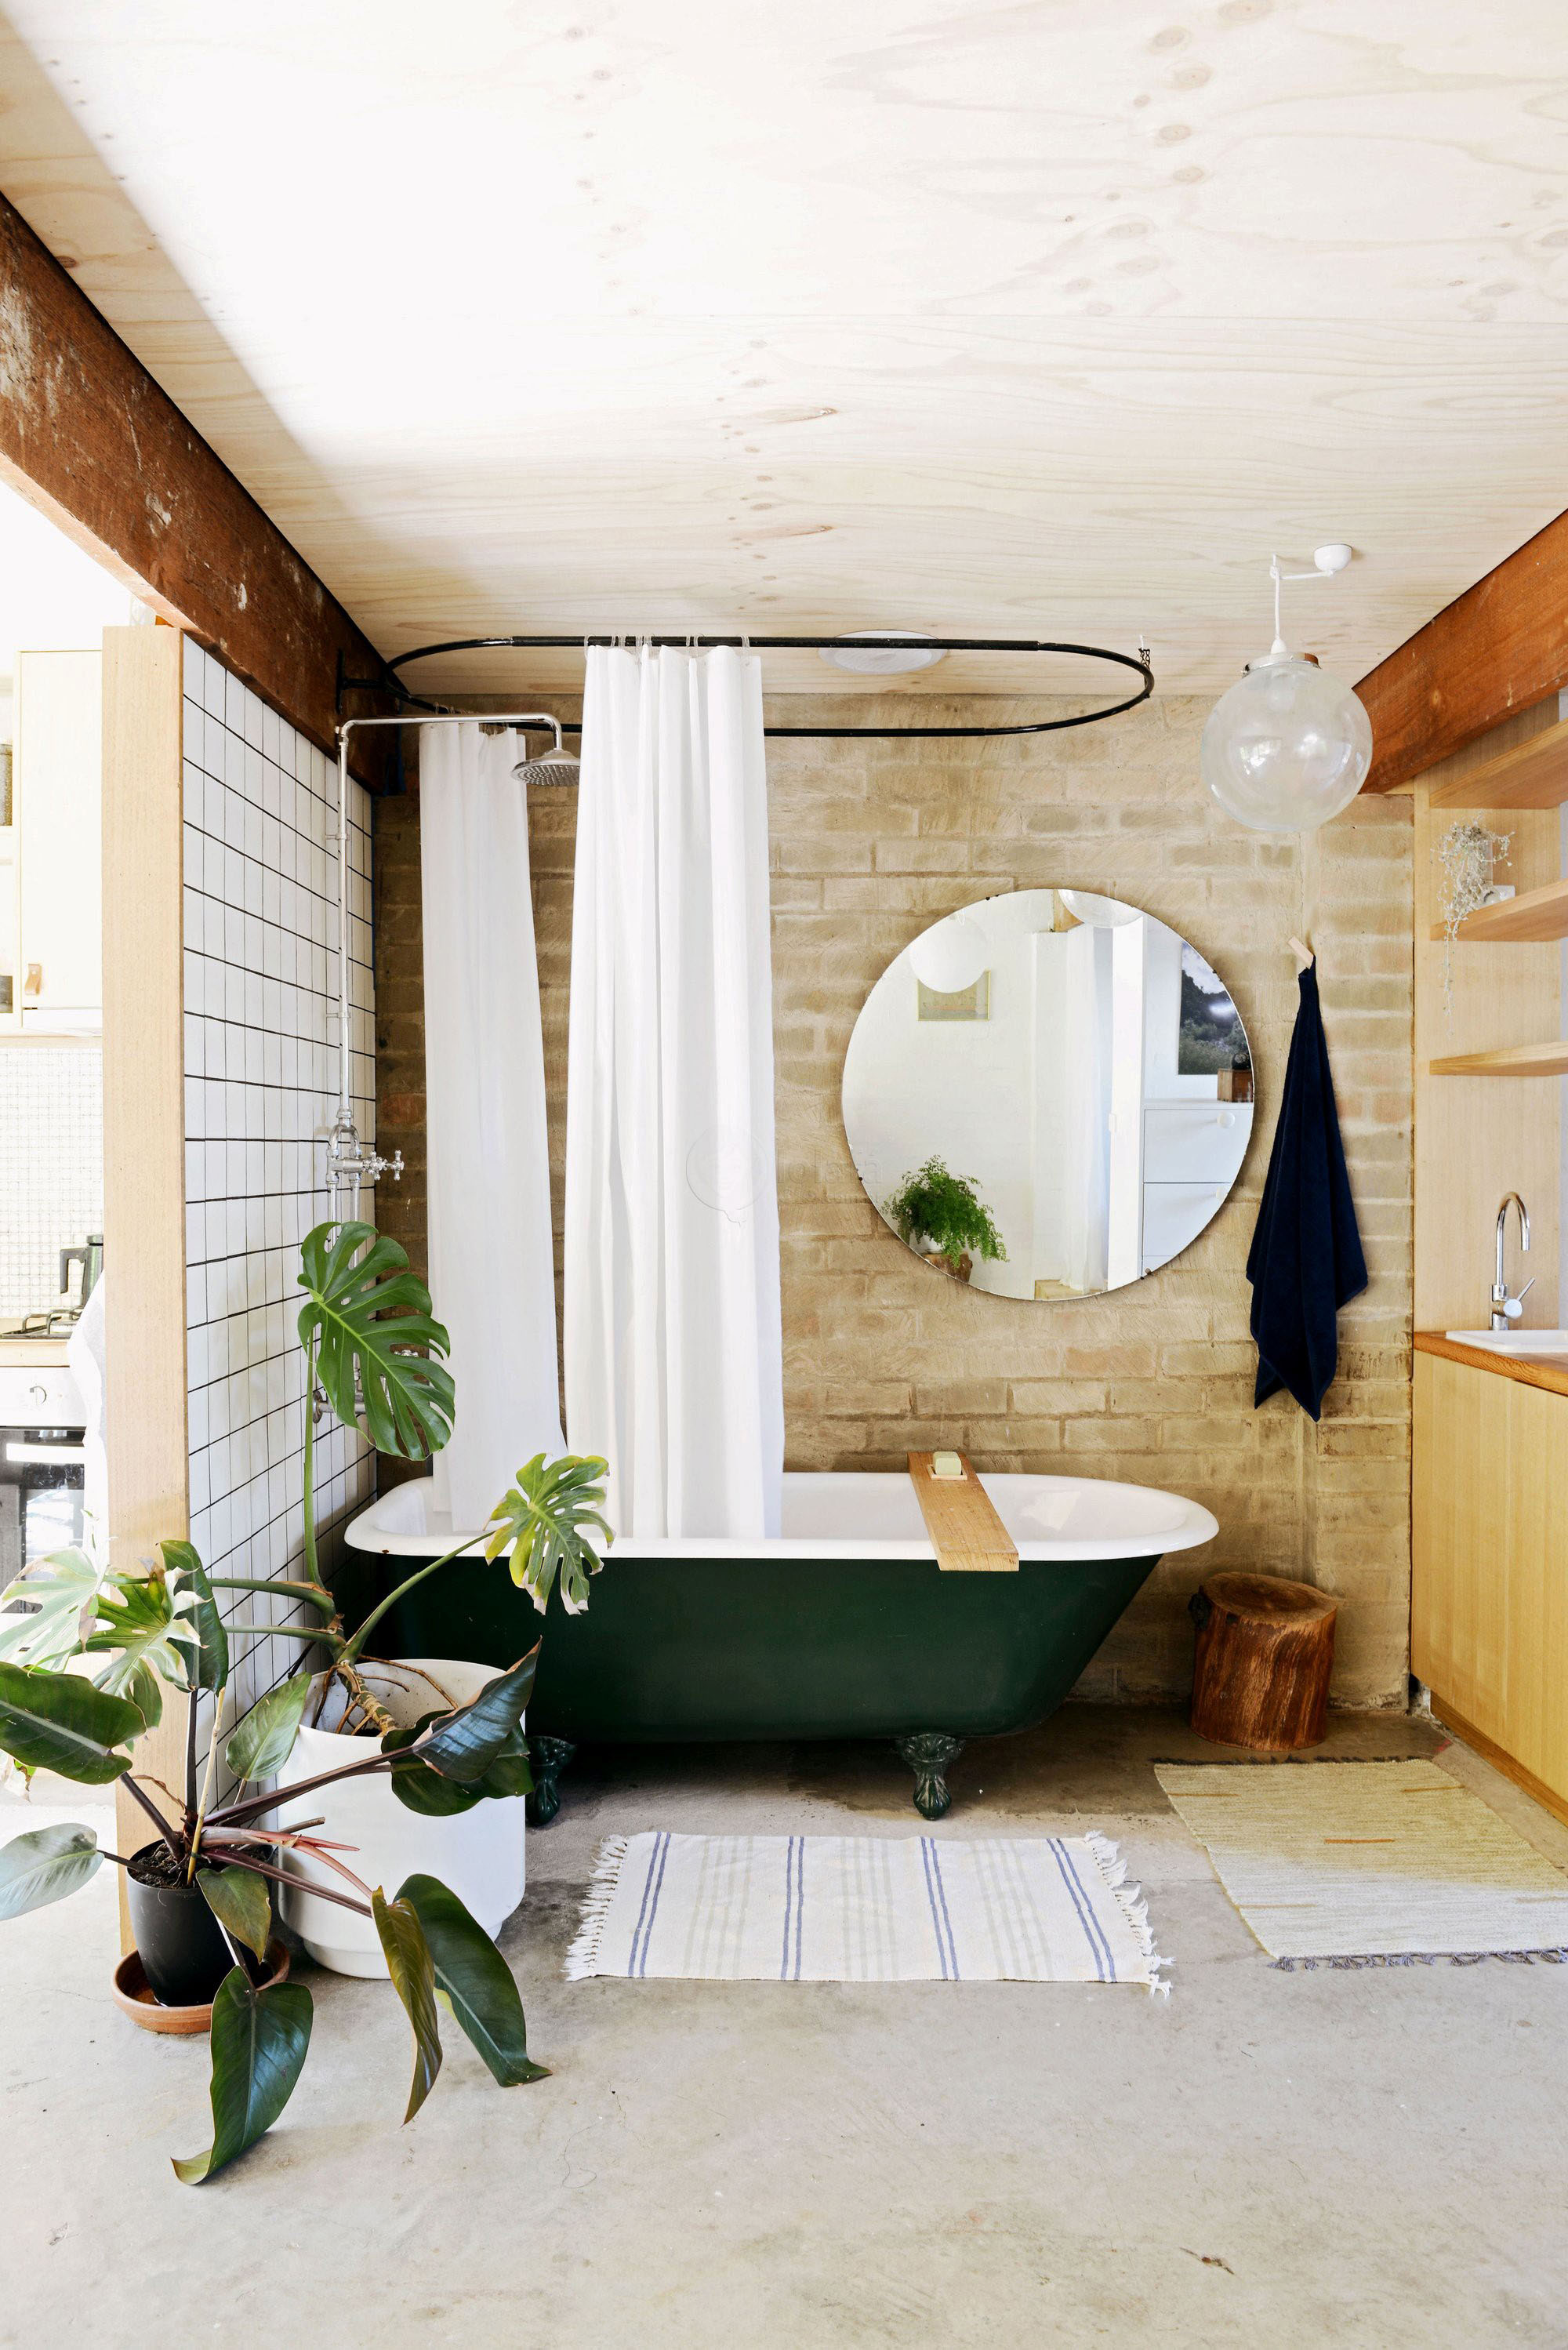 Cho căn phòng tắm gia đình thêm phần rực rỡ với điểm nhấn là chiếc bồn tắm đầy màu sắc - Ảnh 3.